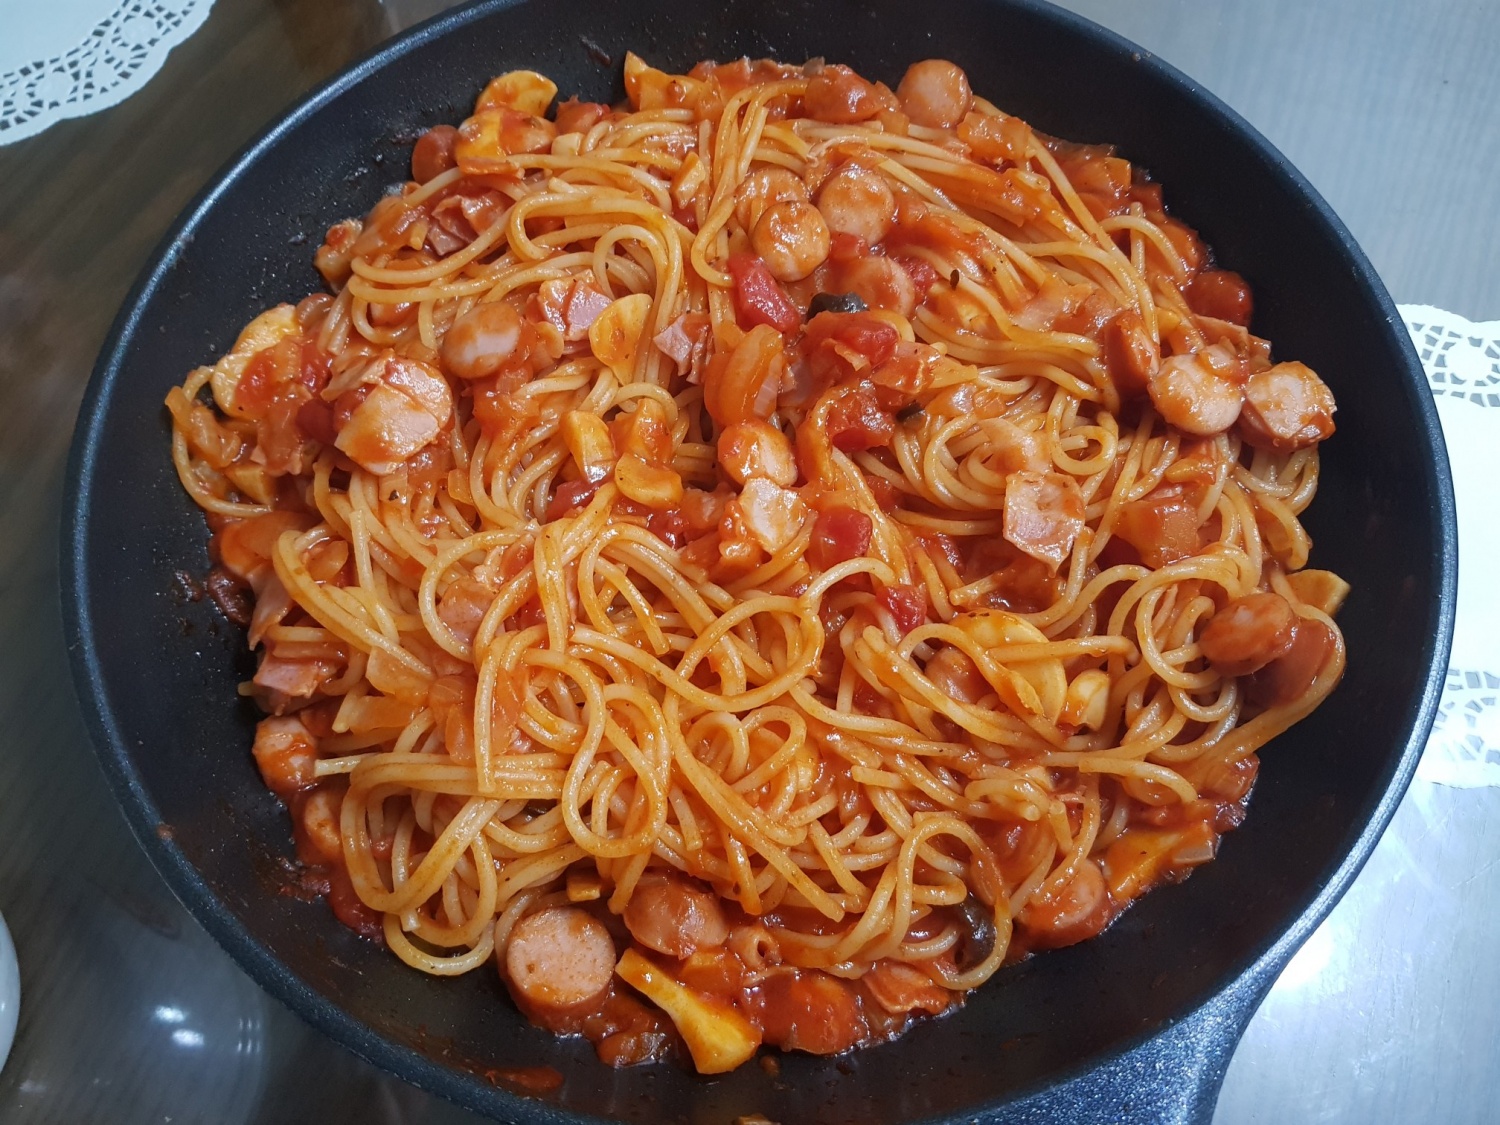 간단한 '토마토스파게티' 만들기!